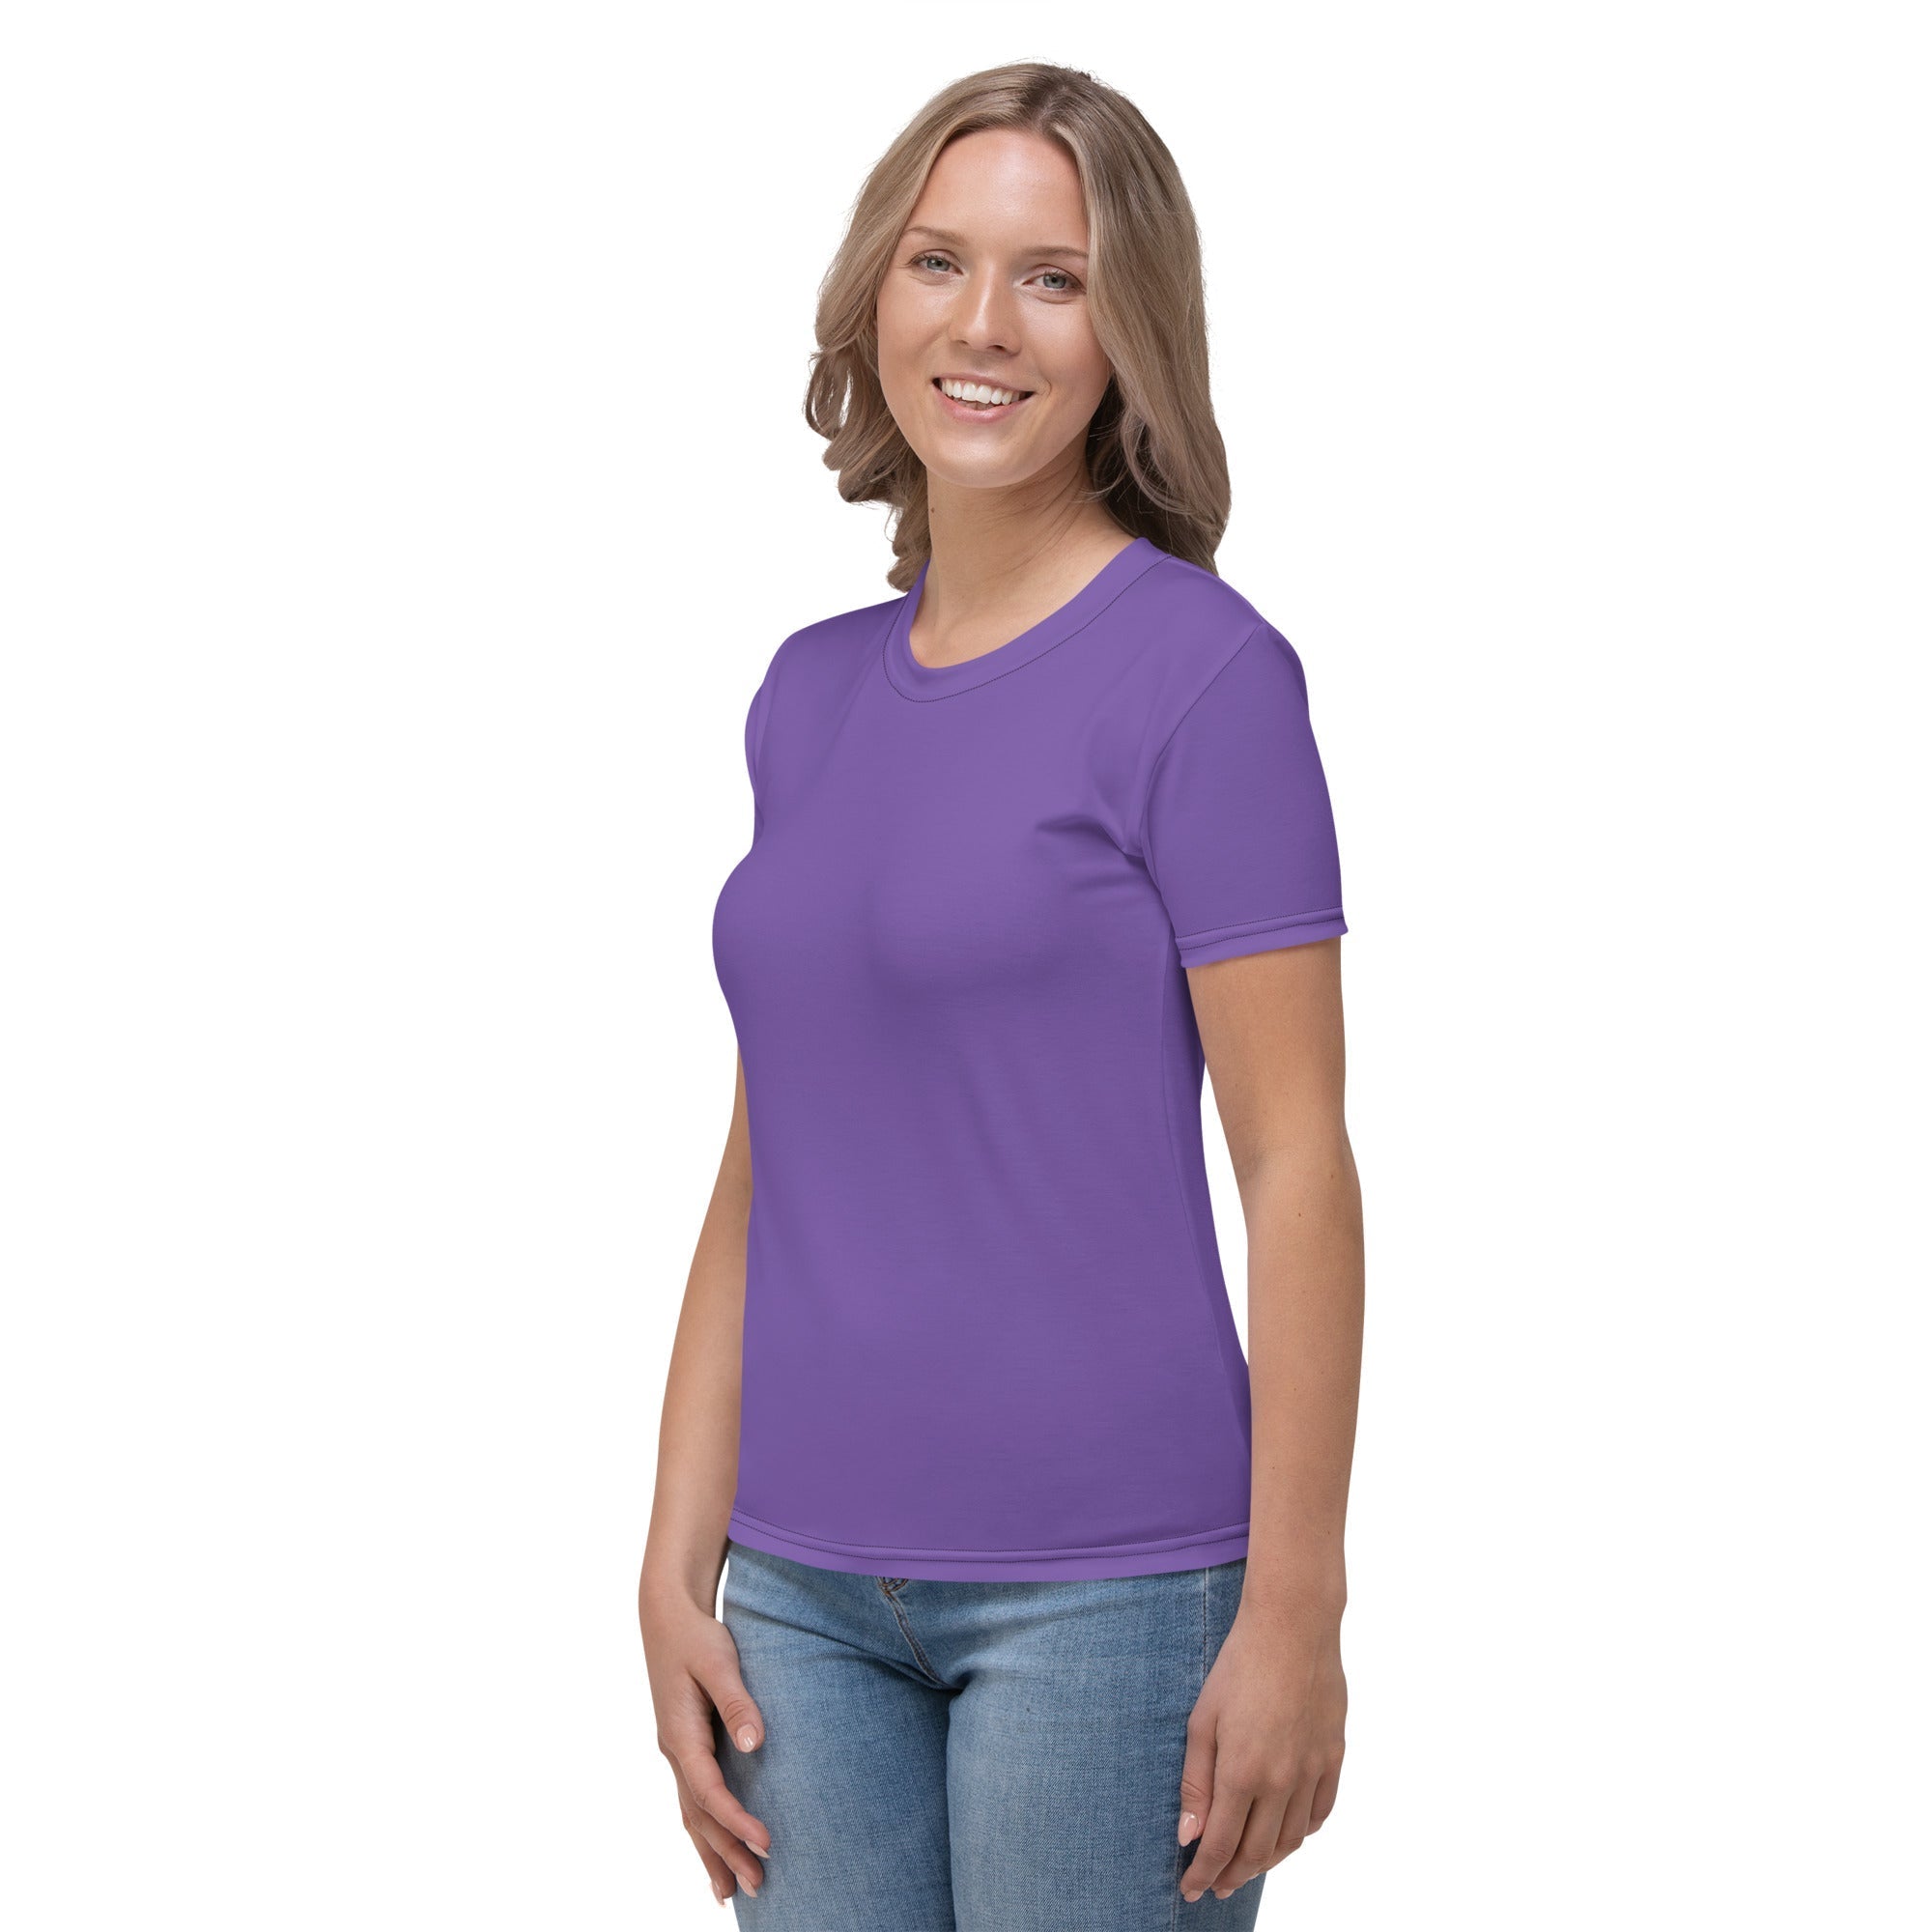 Fierce Purple T-shirt